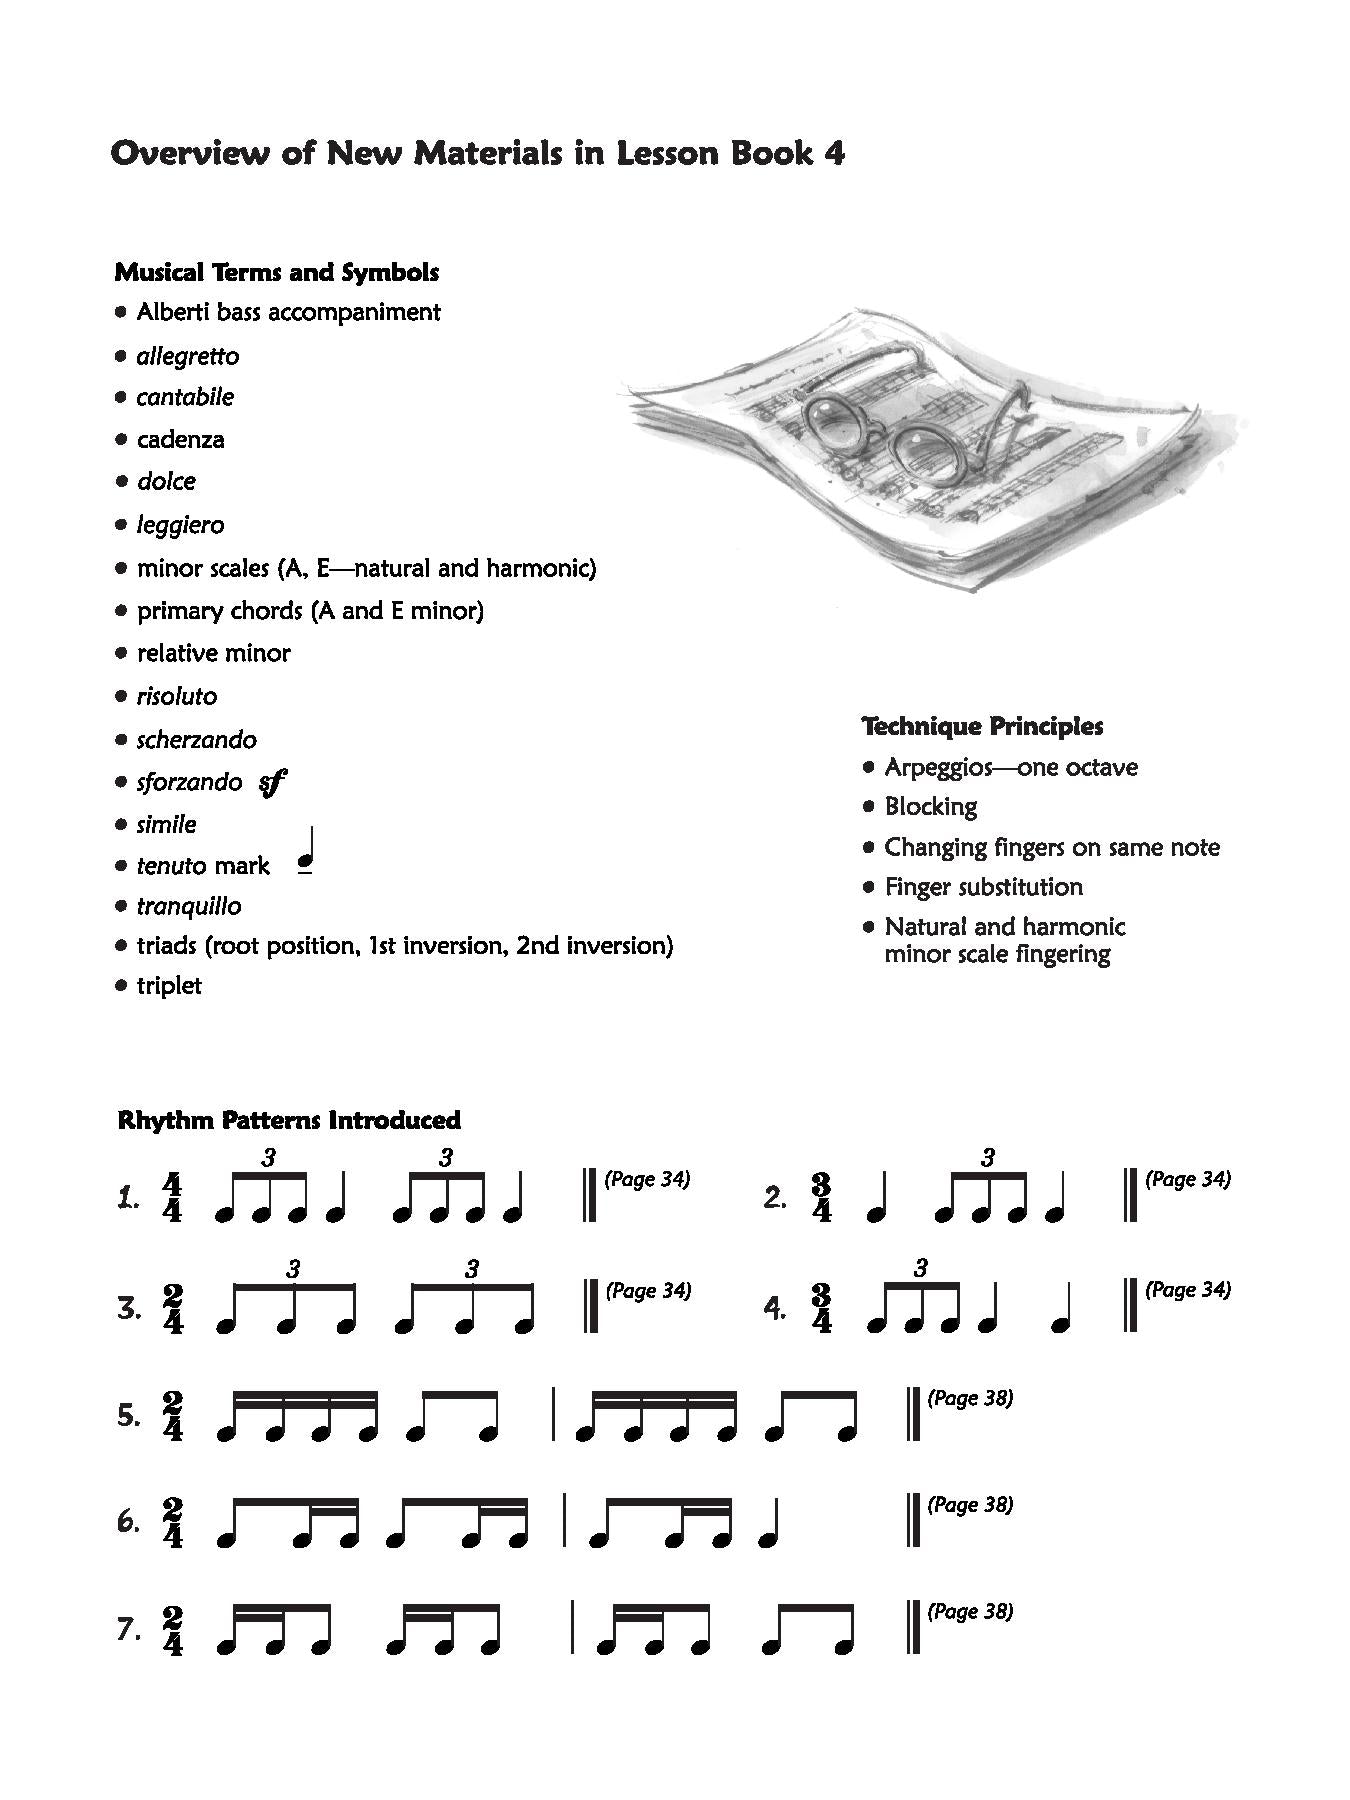 Alfred's Premier Piano Course, Lesson 4